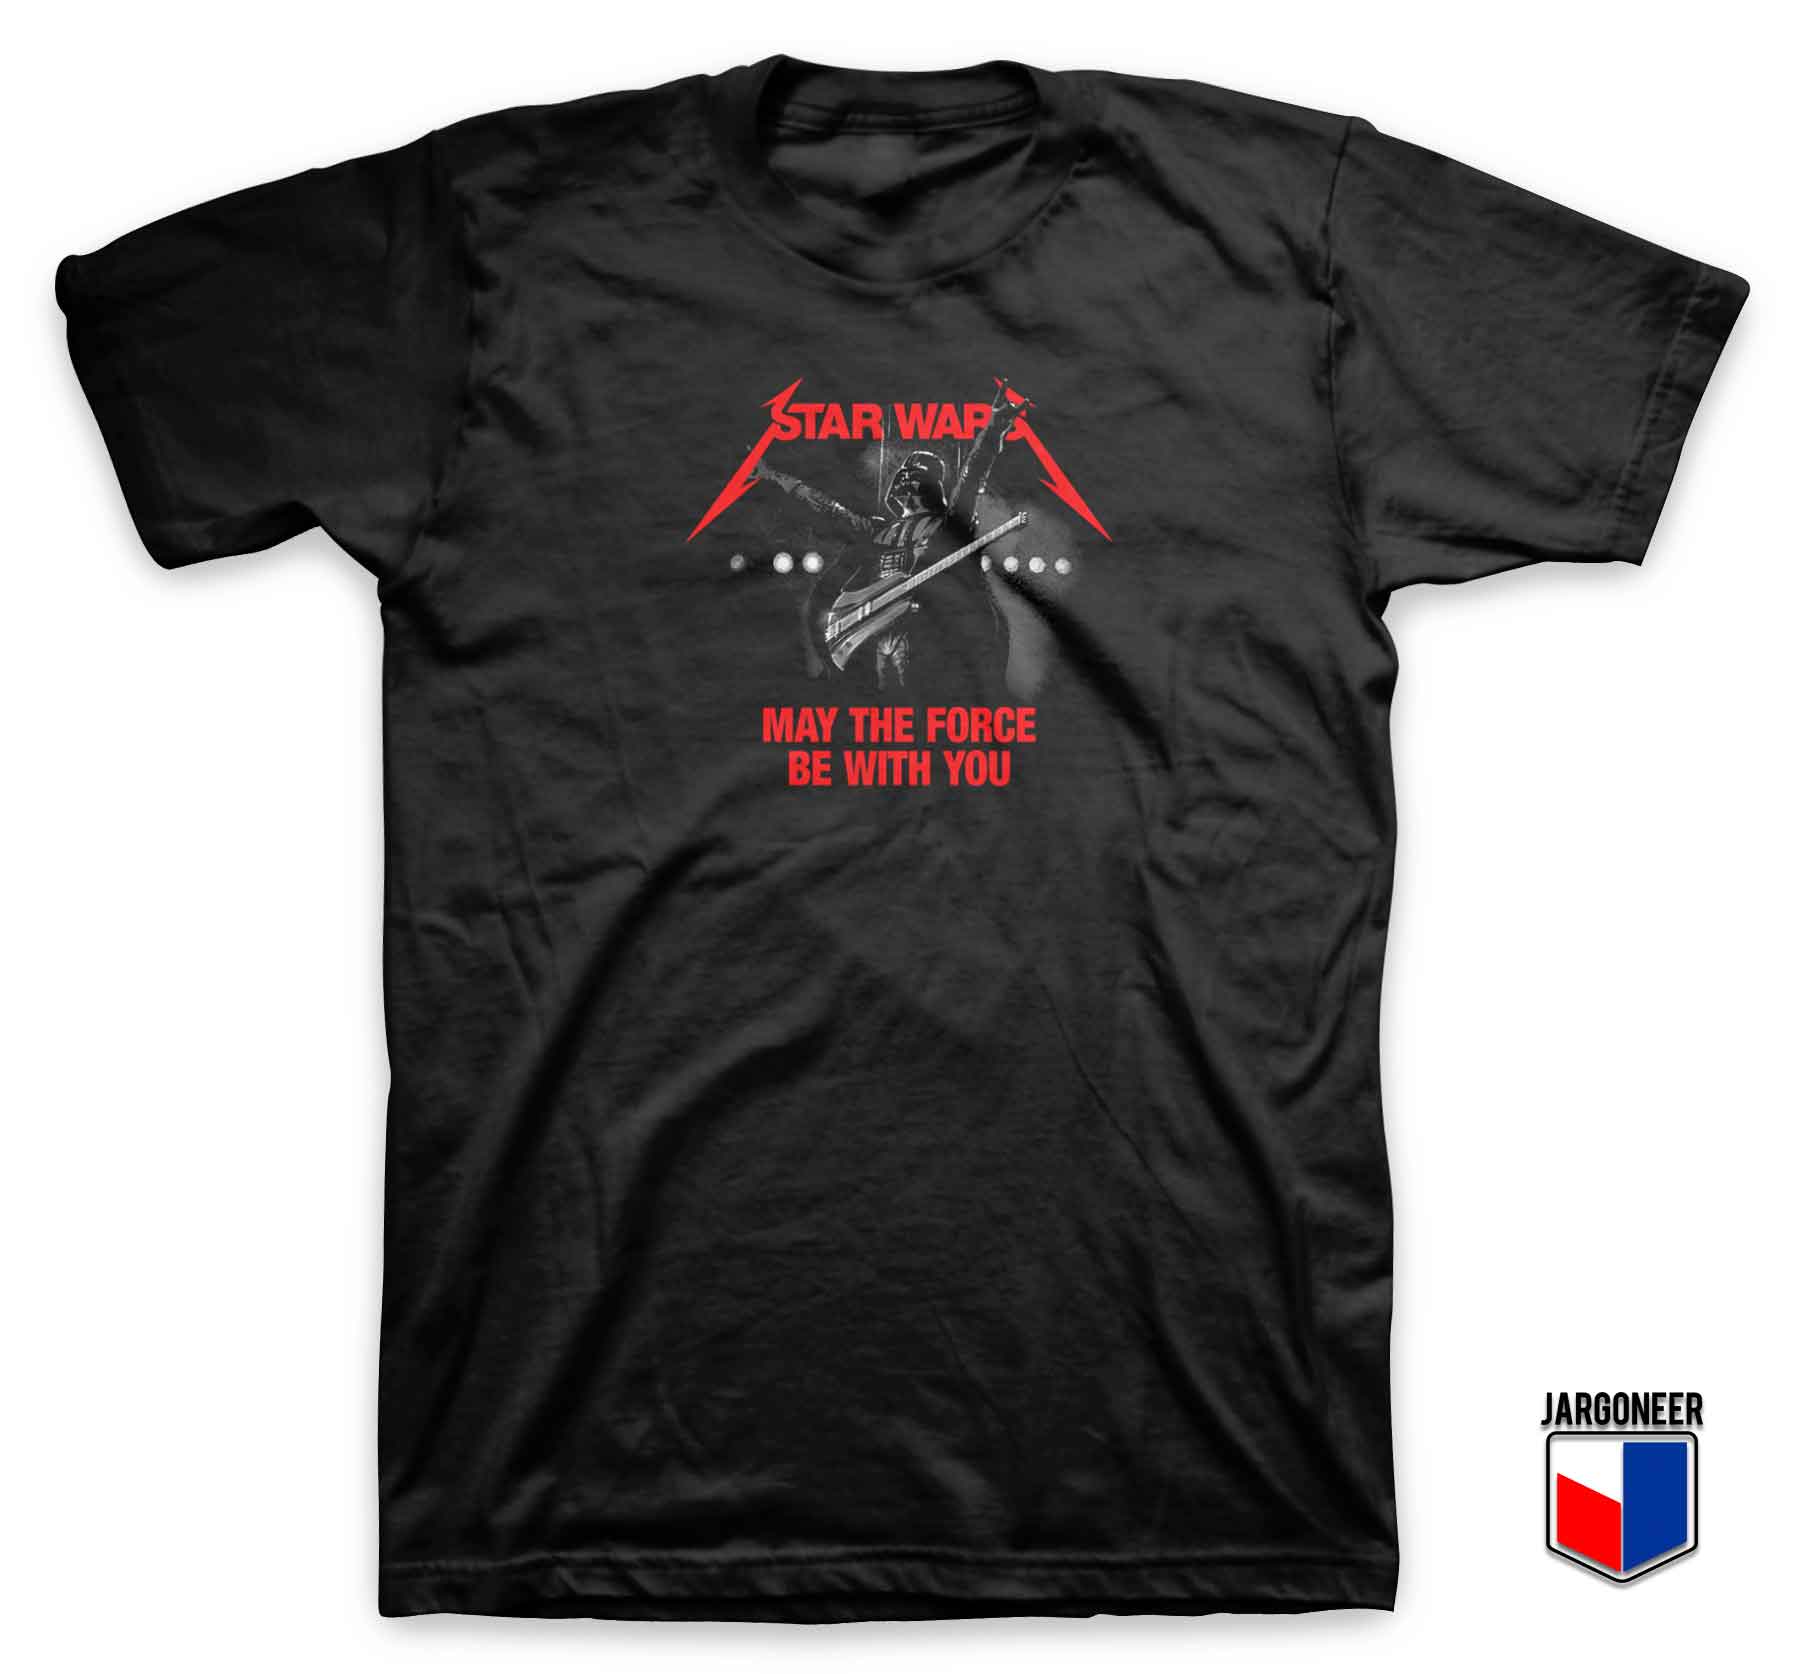 Star Wars Metal Concert Parody T Shirt - Shop Unique Graphic Cool Shirt Designs